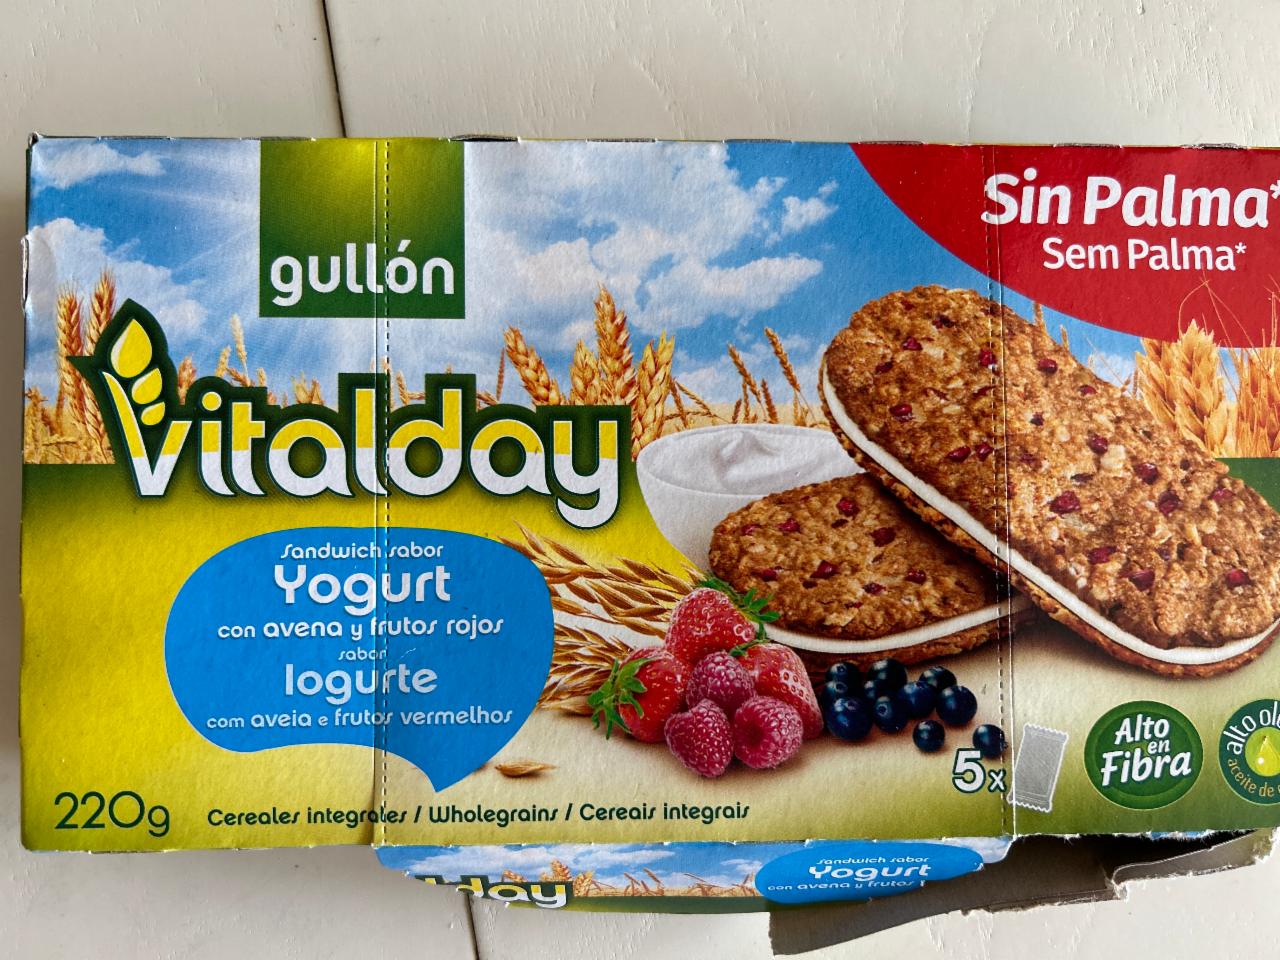 Фото - Печенье с начинкой йогурт и лесные ягоды Vitalday Gullon